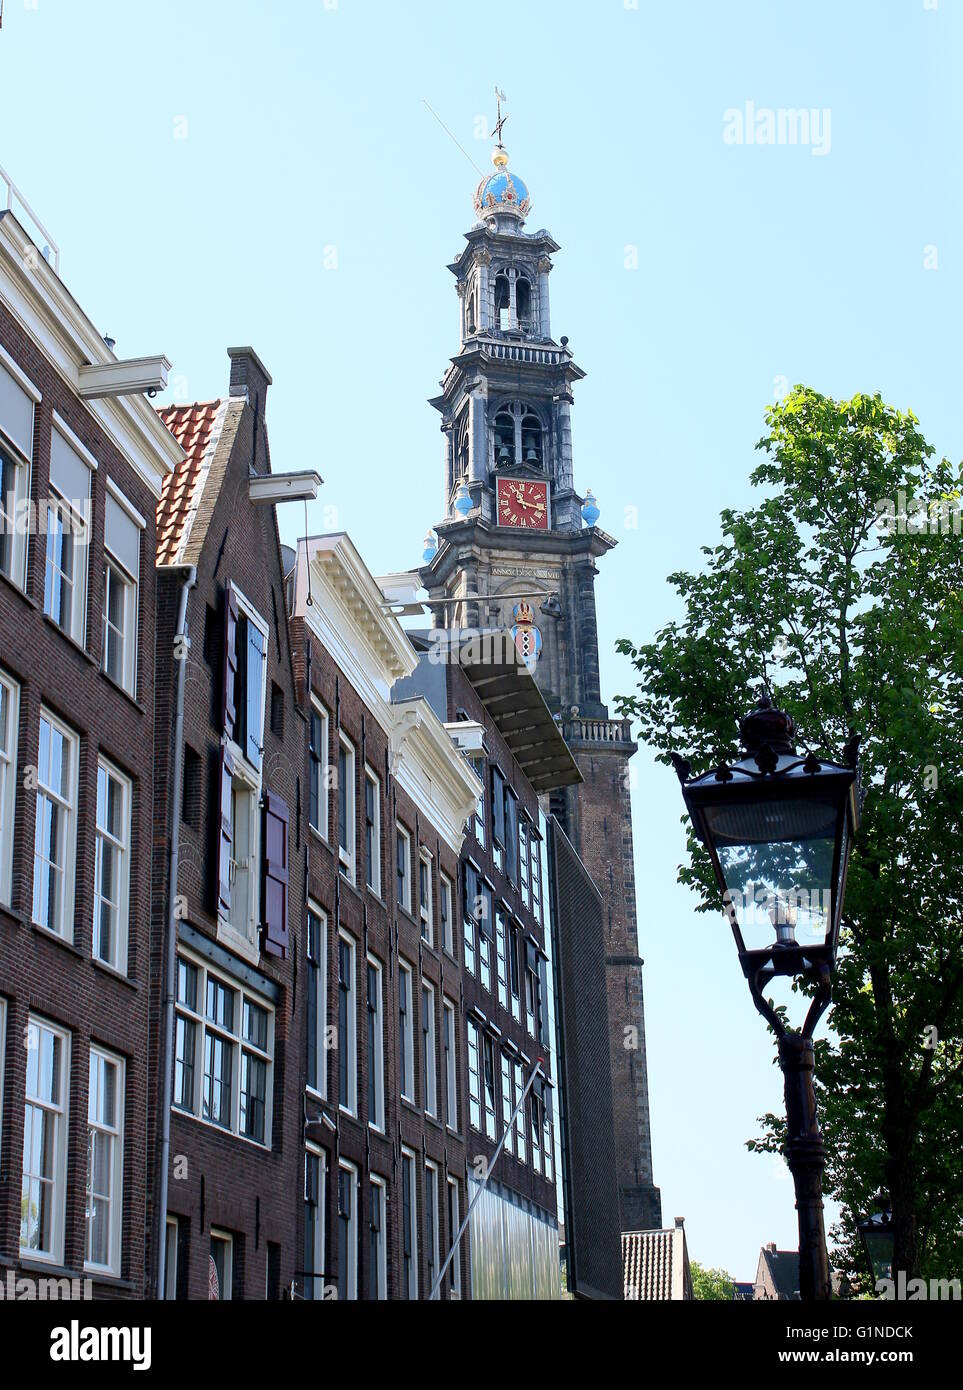 Prinsengracht Kanal mit oberen Geschichten von Anne Frankhuis - Anne Frank Museum, Amsterdam, Jordaan, Niederlande. Westerkerk Kirchturm im Hintergrund Stockfoto